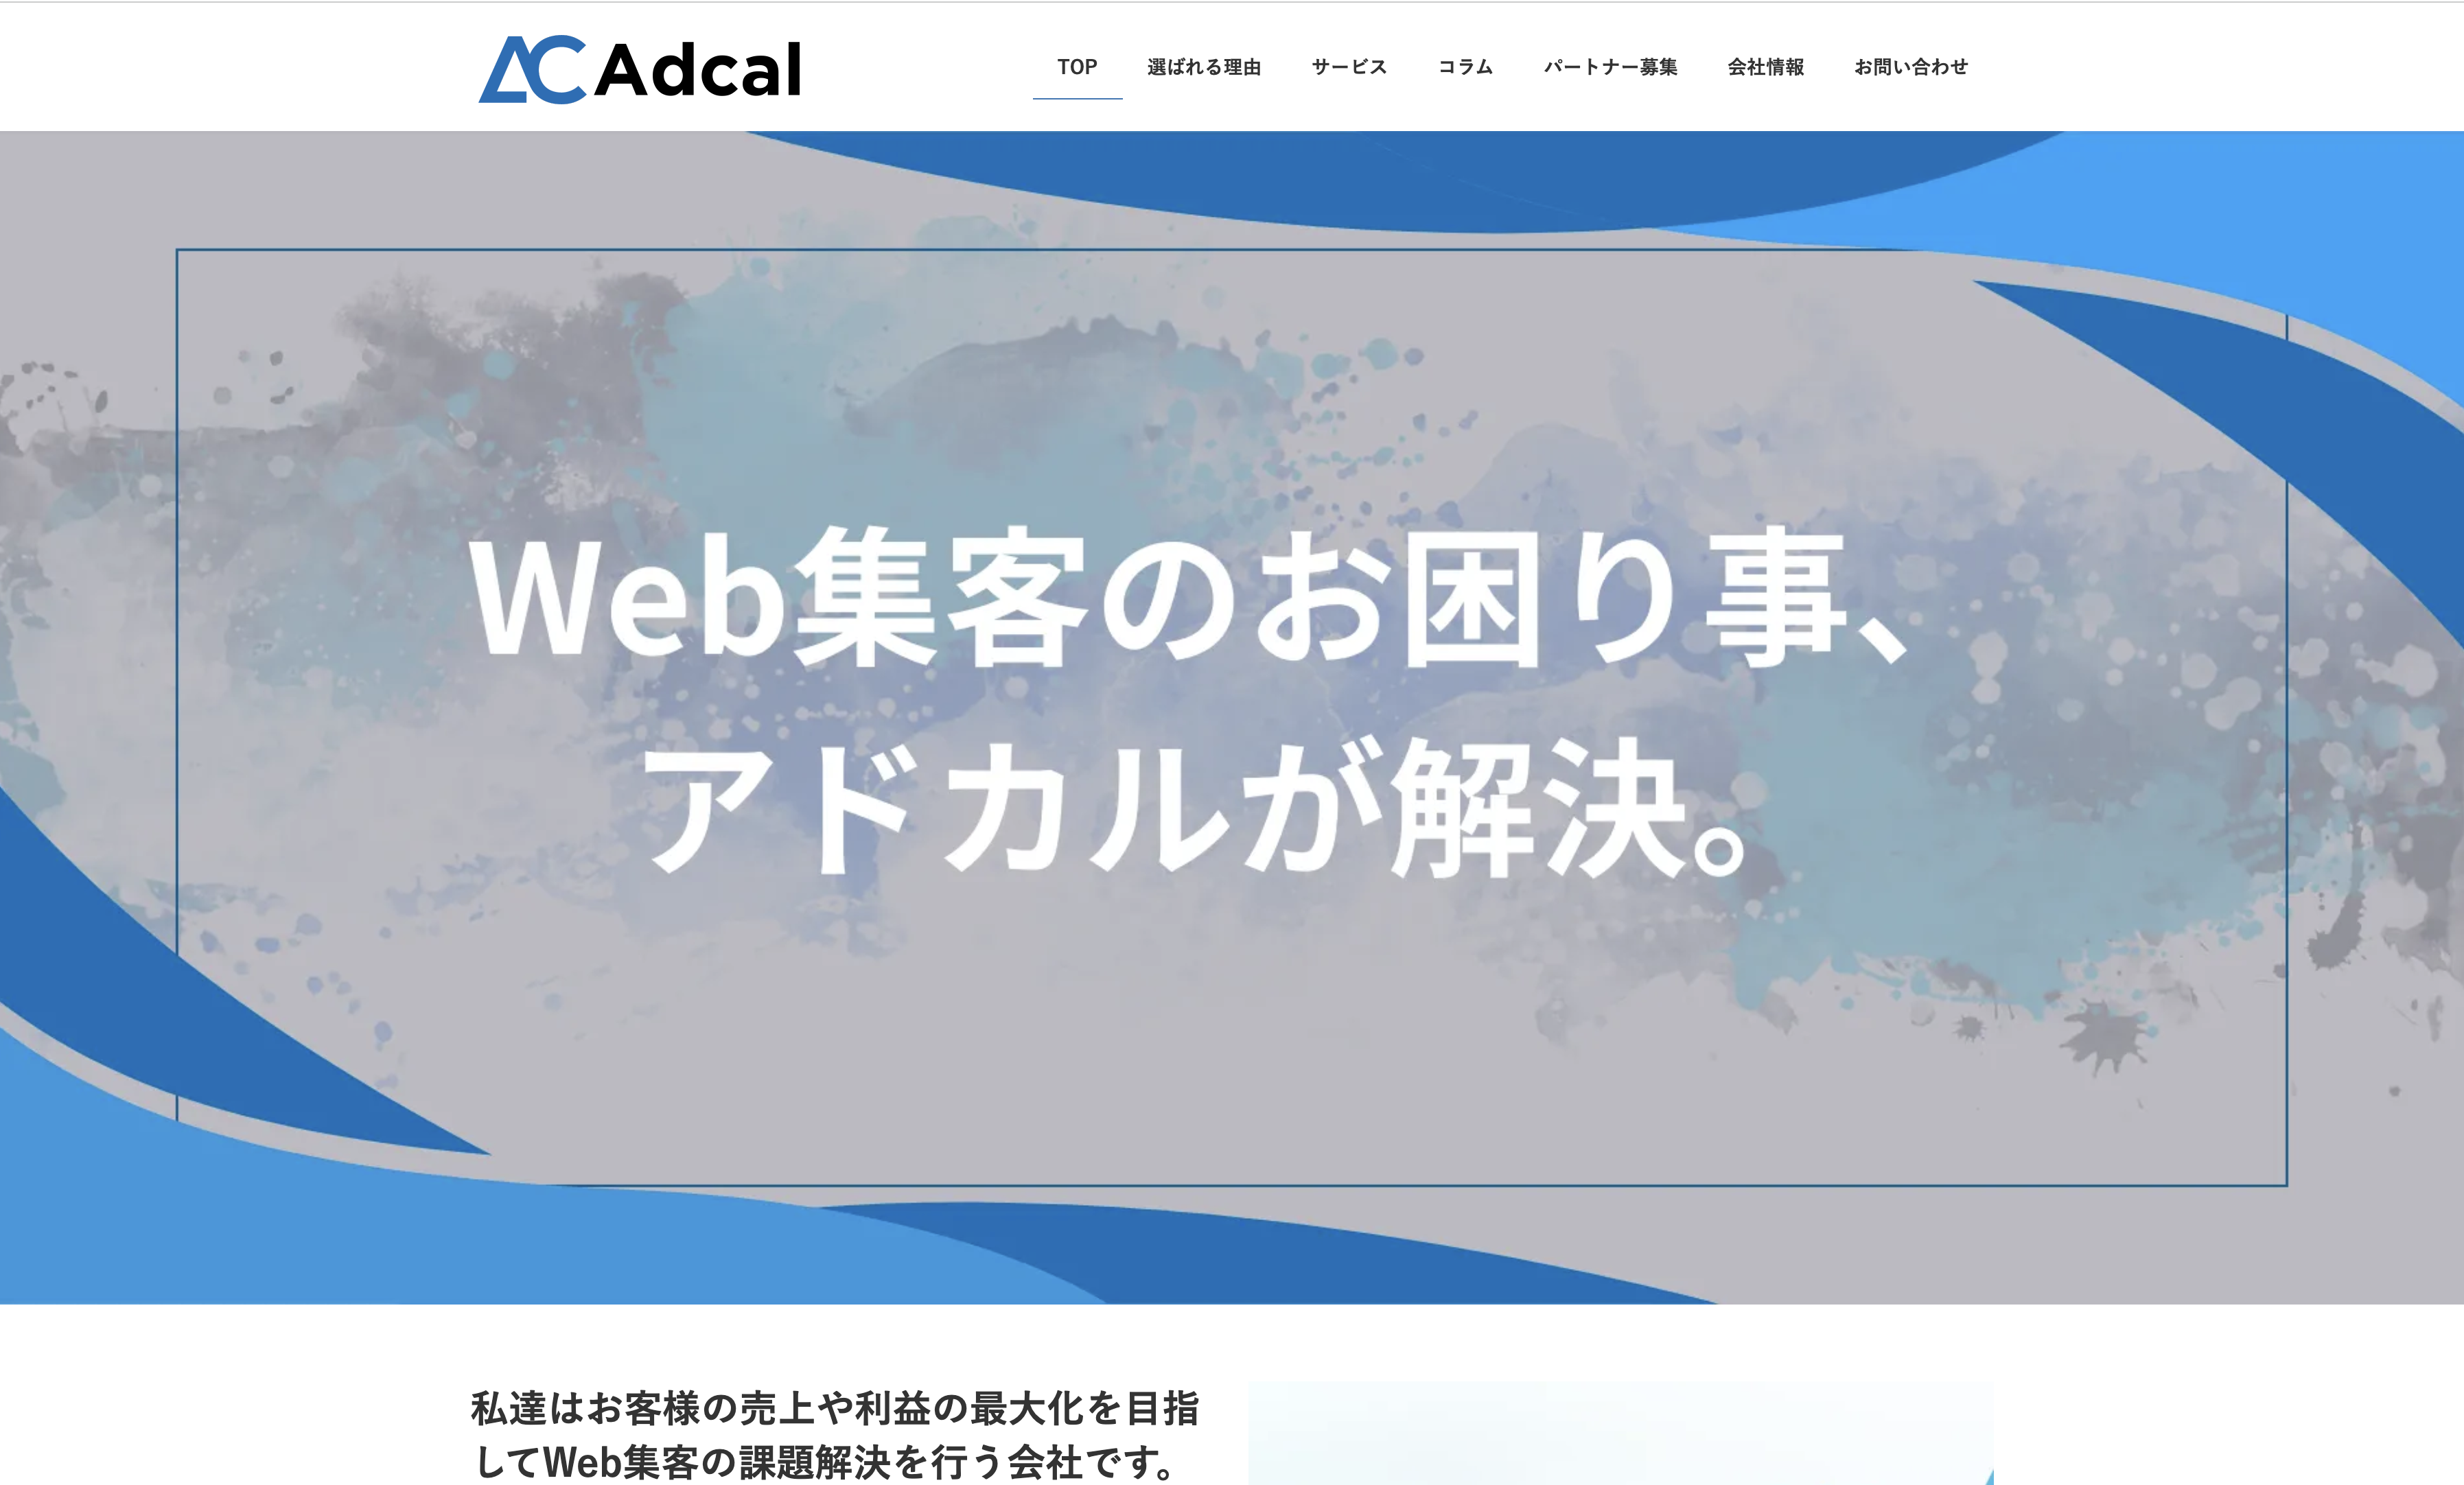 株式会社アドカルの株式会社アドカル:Web広告サービス